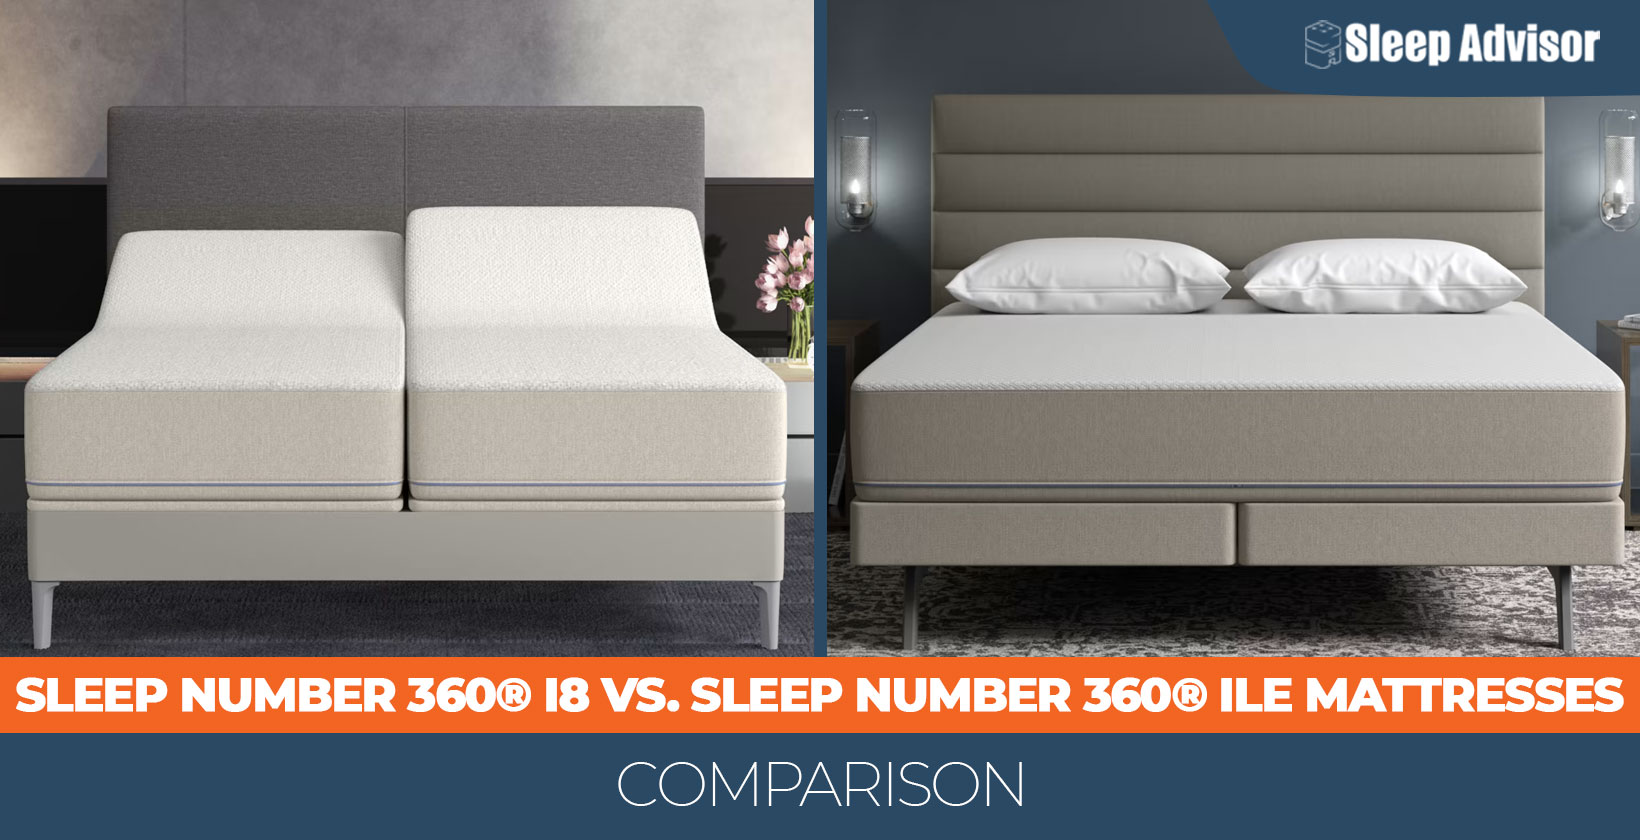 Sleep Number 360® i8 vs. Sleep Number 360® iLE Bed Comparison